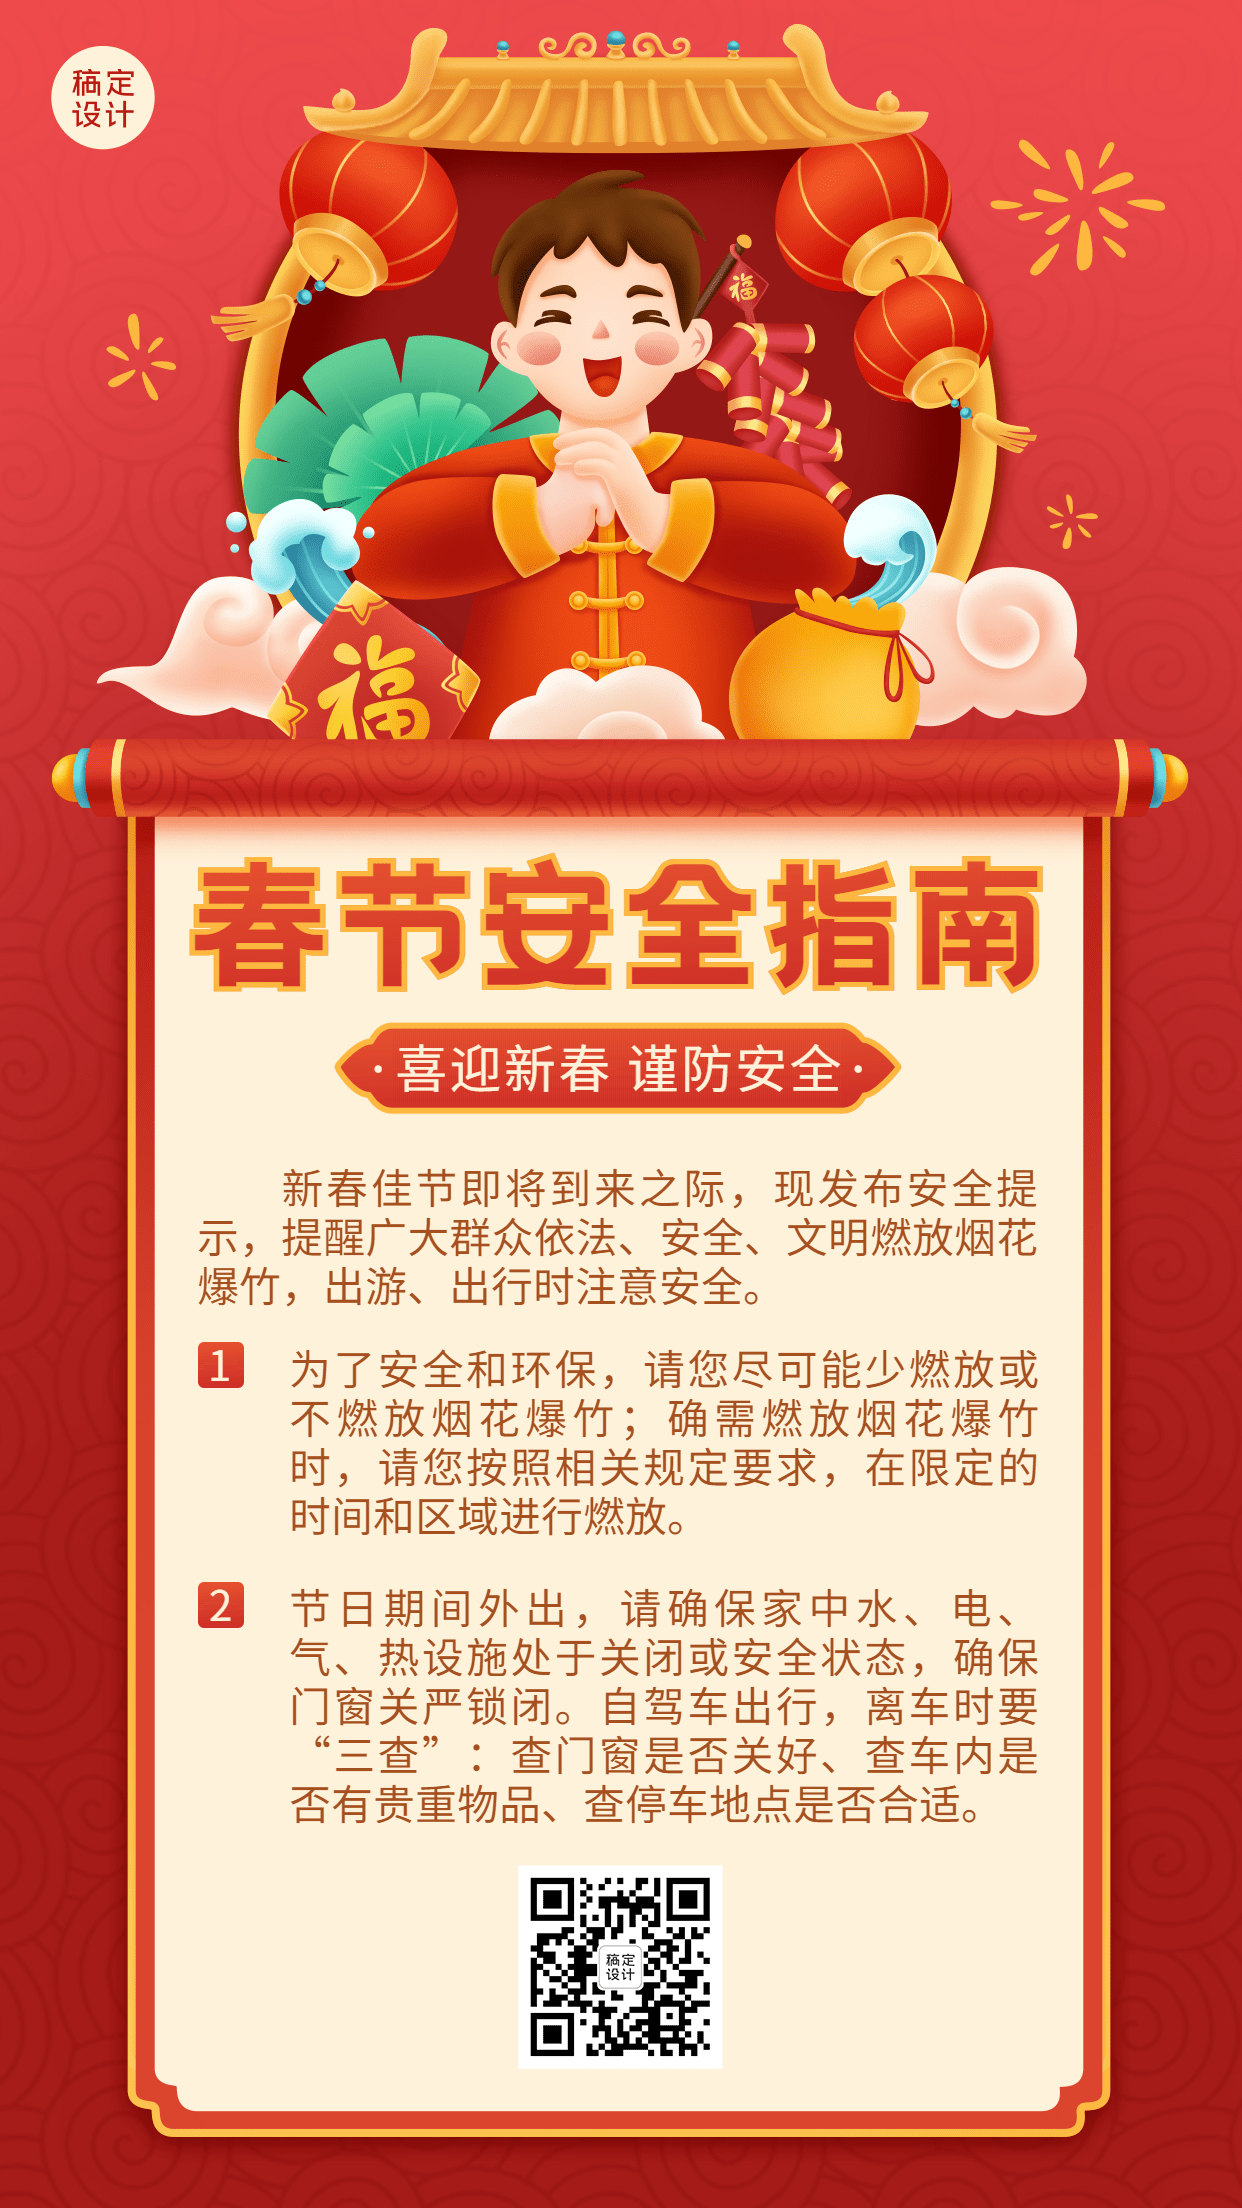 春节安全提示指南手机海报预览效果